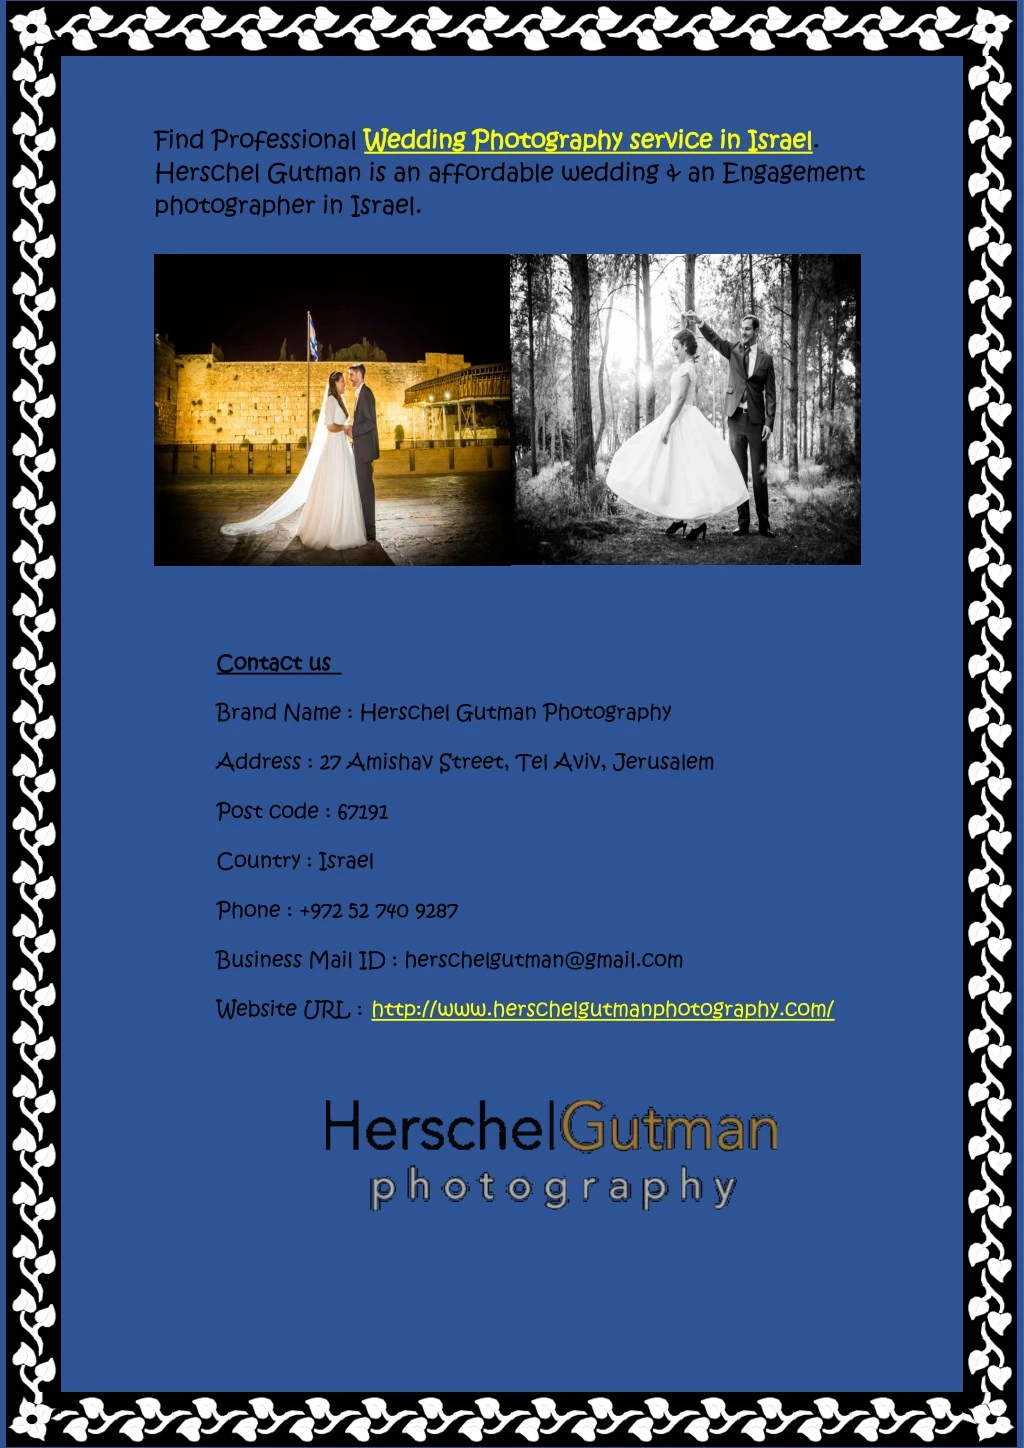 find professional wedding herschel gutman